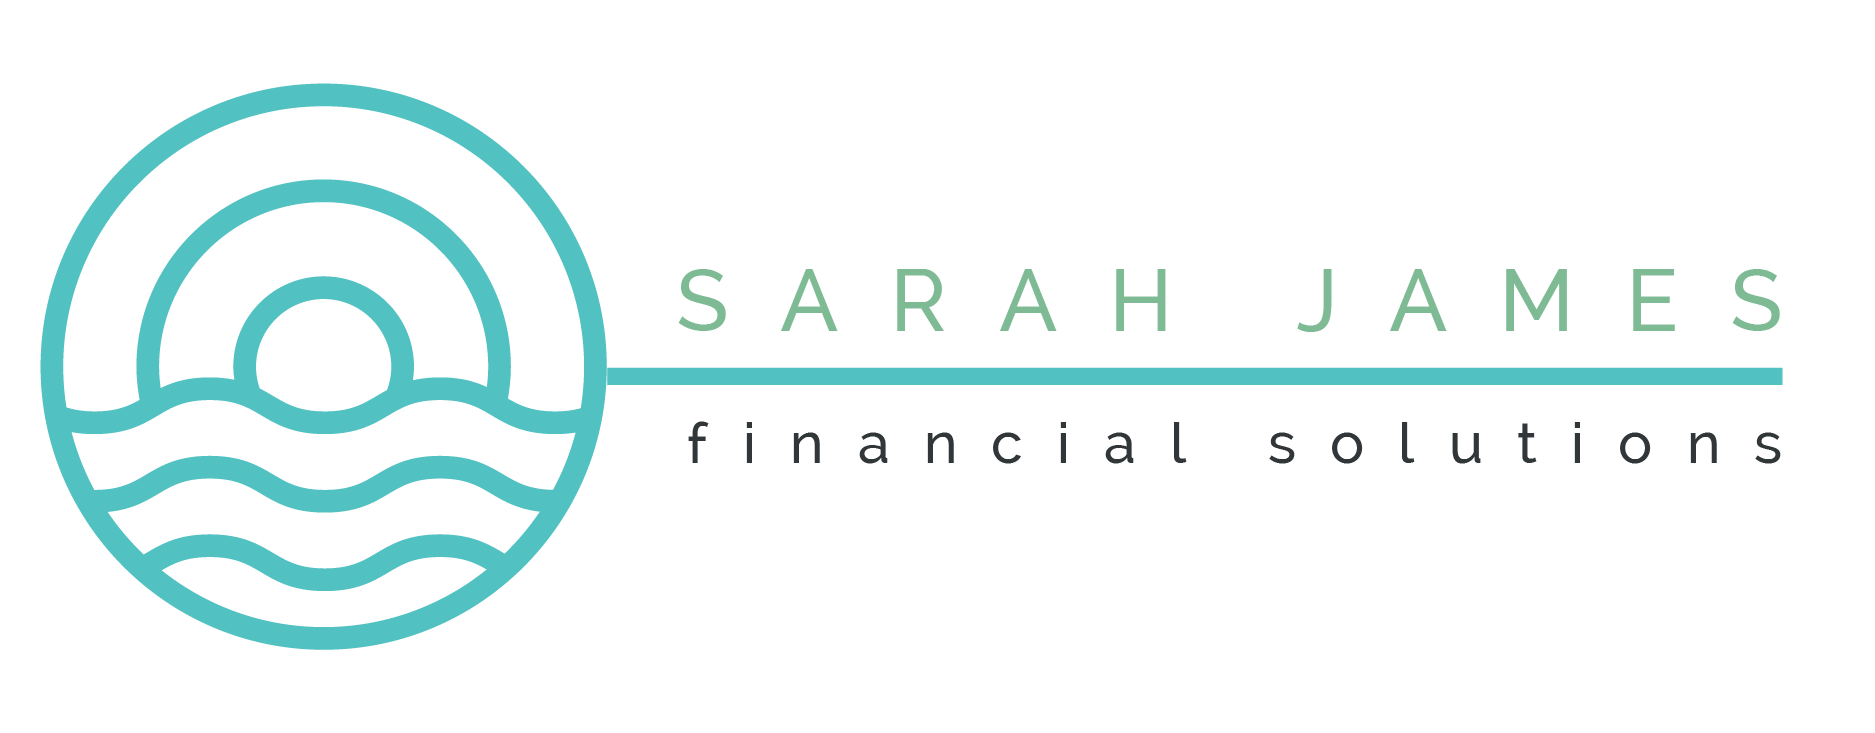 Sarah James Financial Solutions